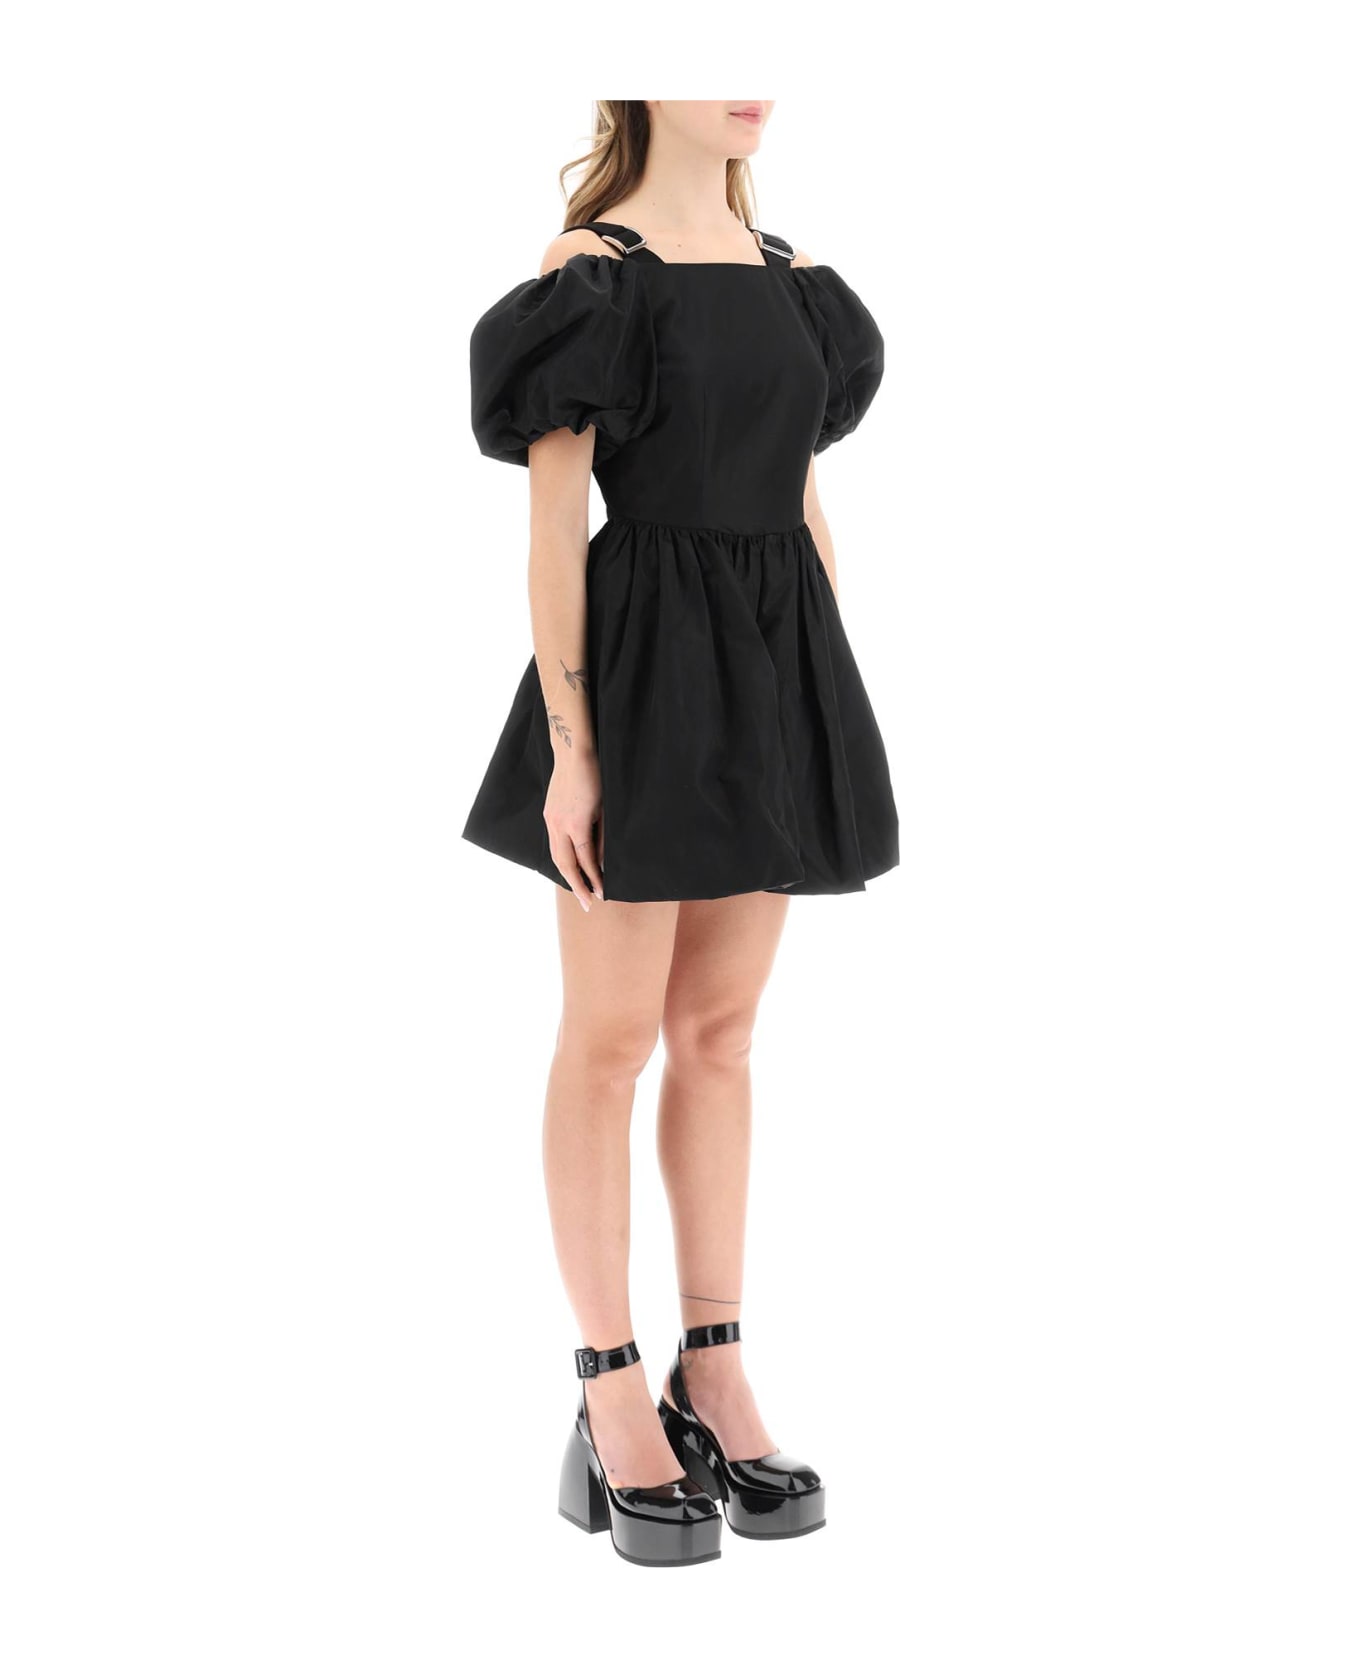 Simone Rocha Off-the-shoulder Taffeta Mini Dress With Slider Straps - BLACK (Black)